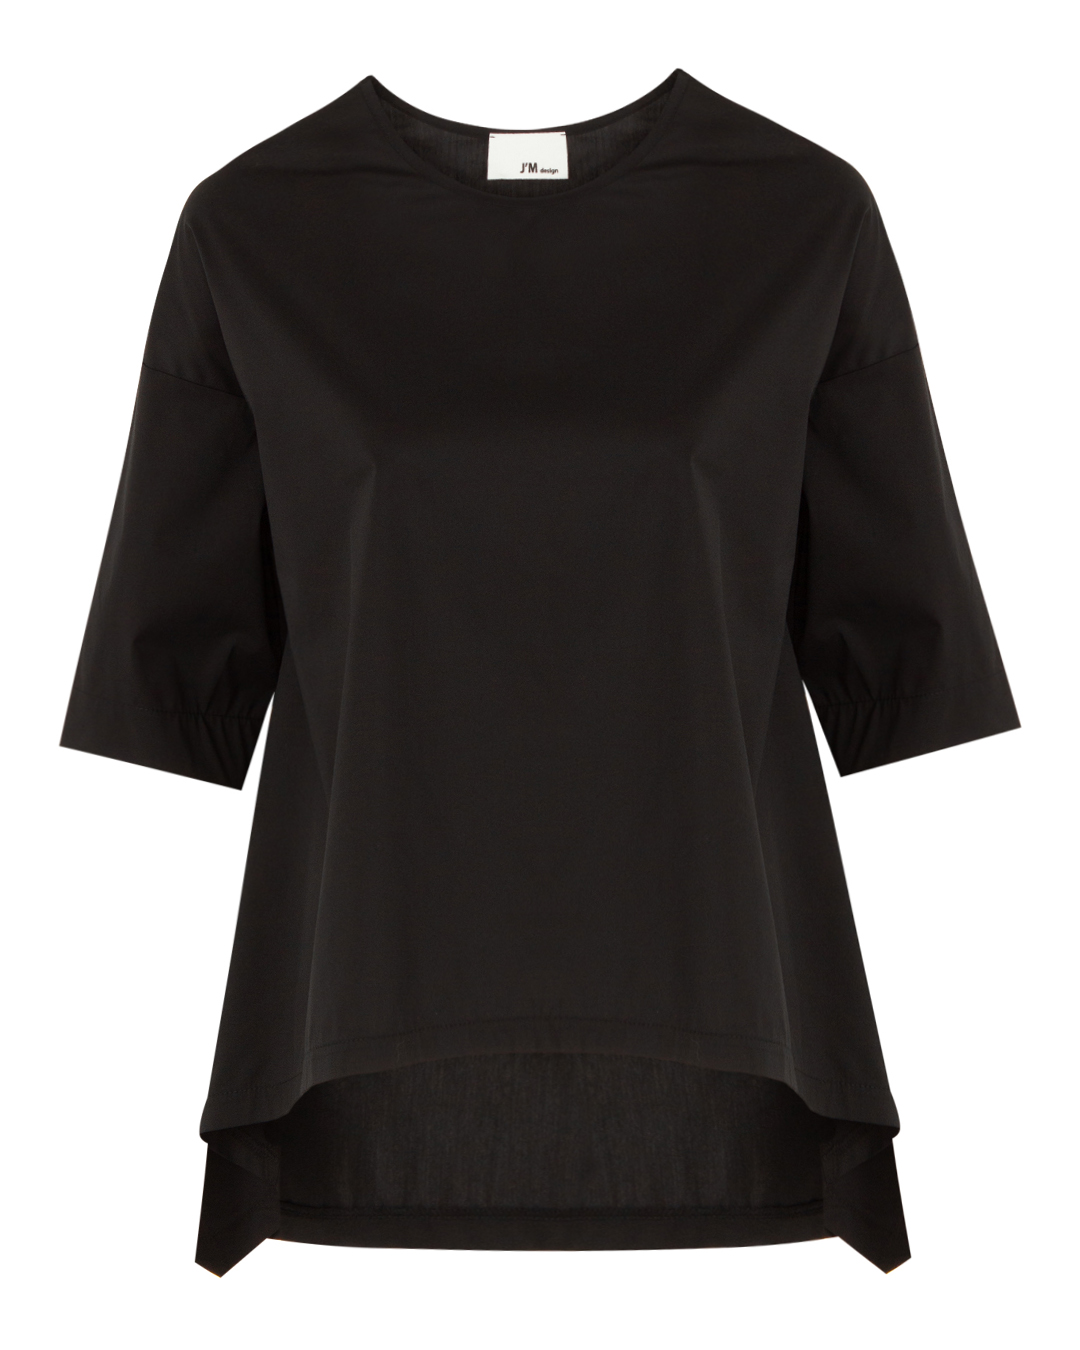 блуза J.M design JM-MA07 черный 2xs, размер 2xs - фото 1